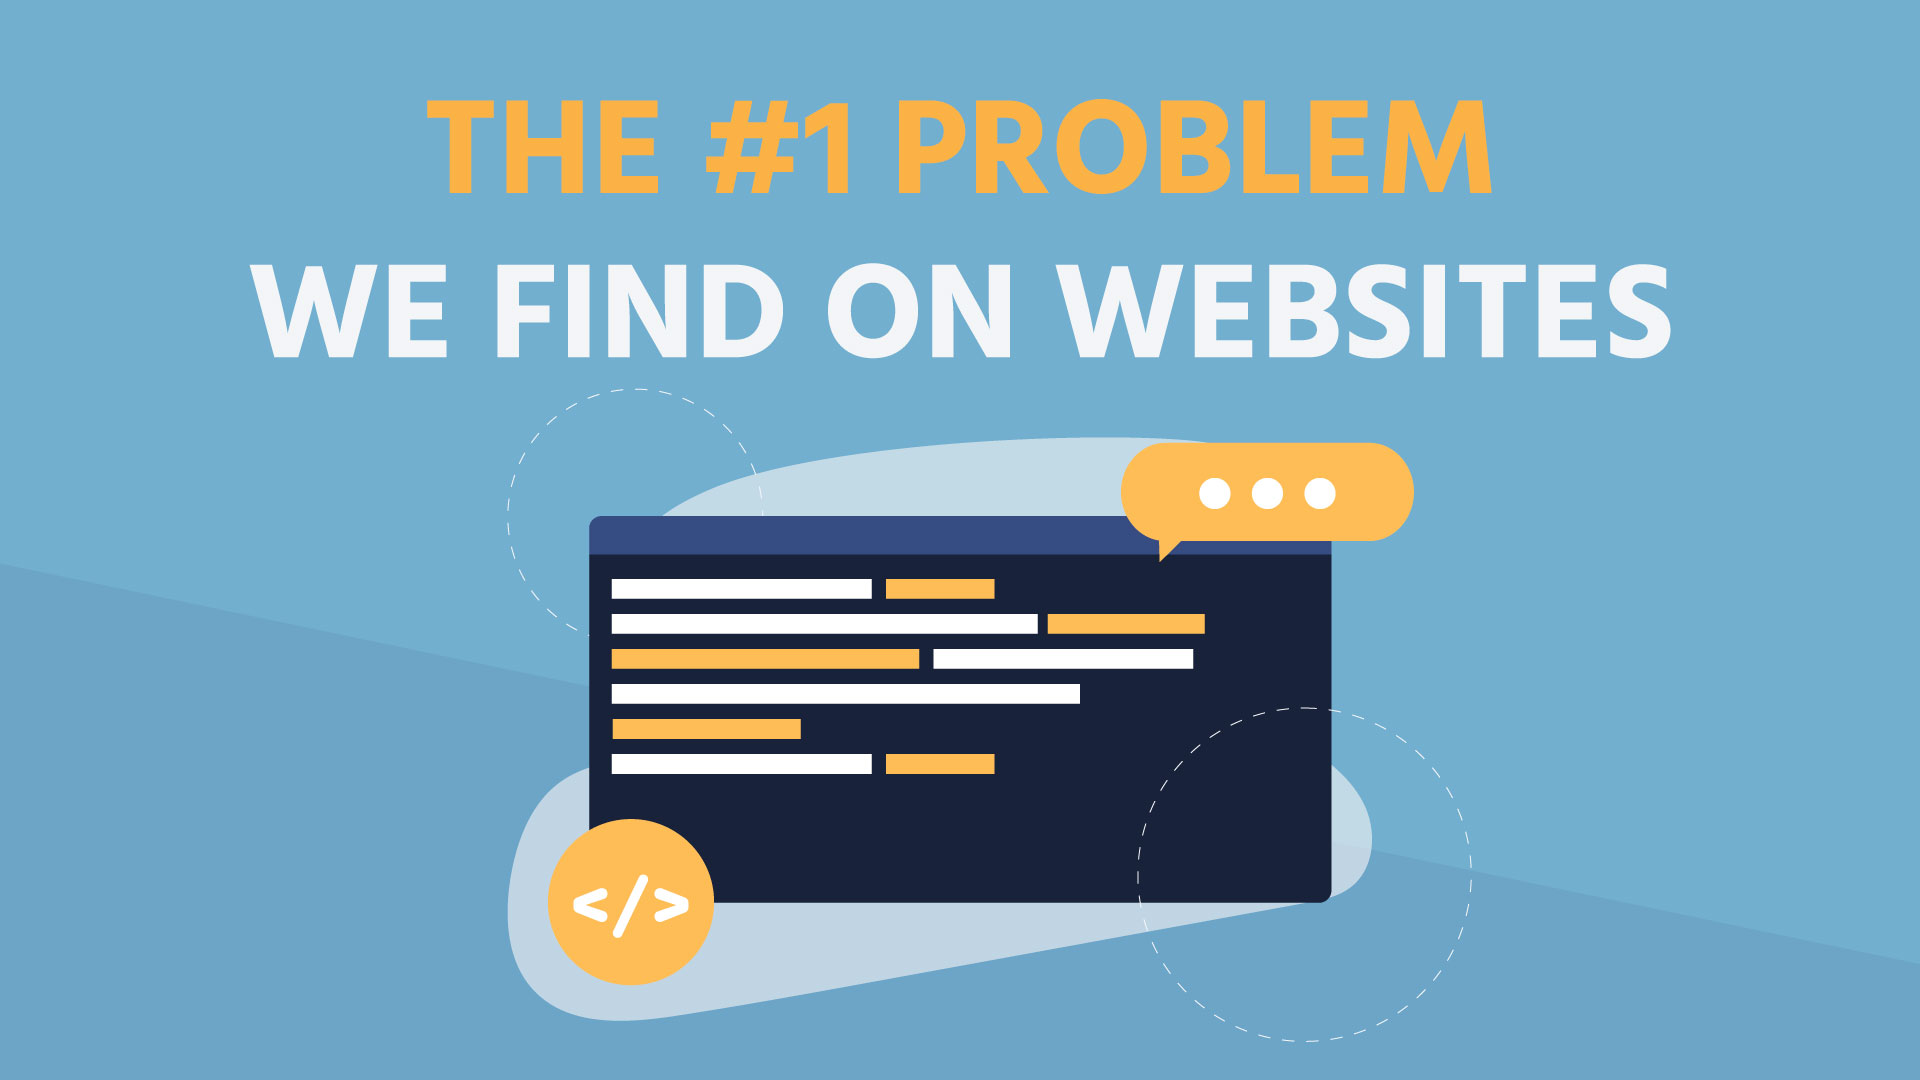 The #1 problem we find on websites.